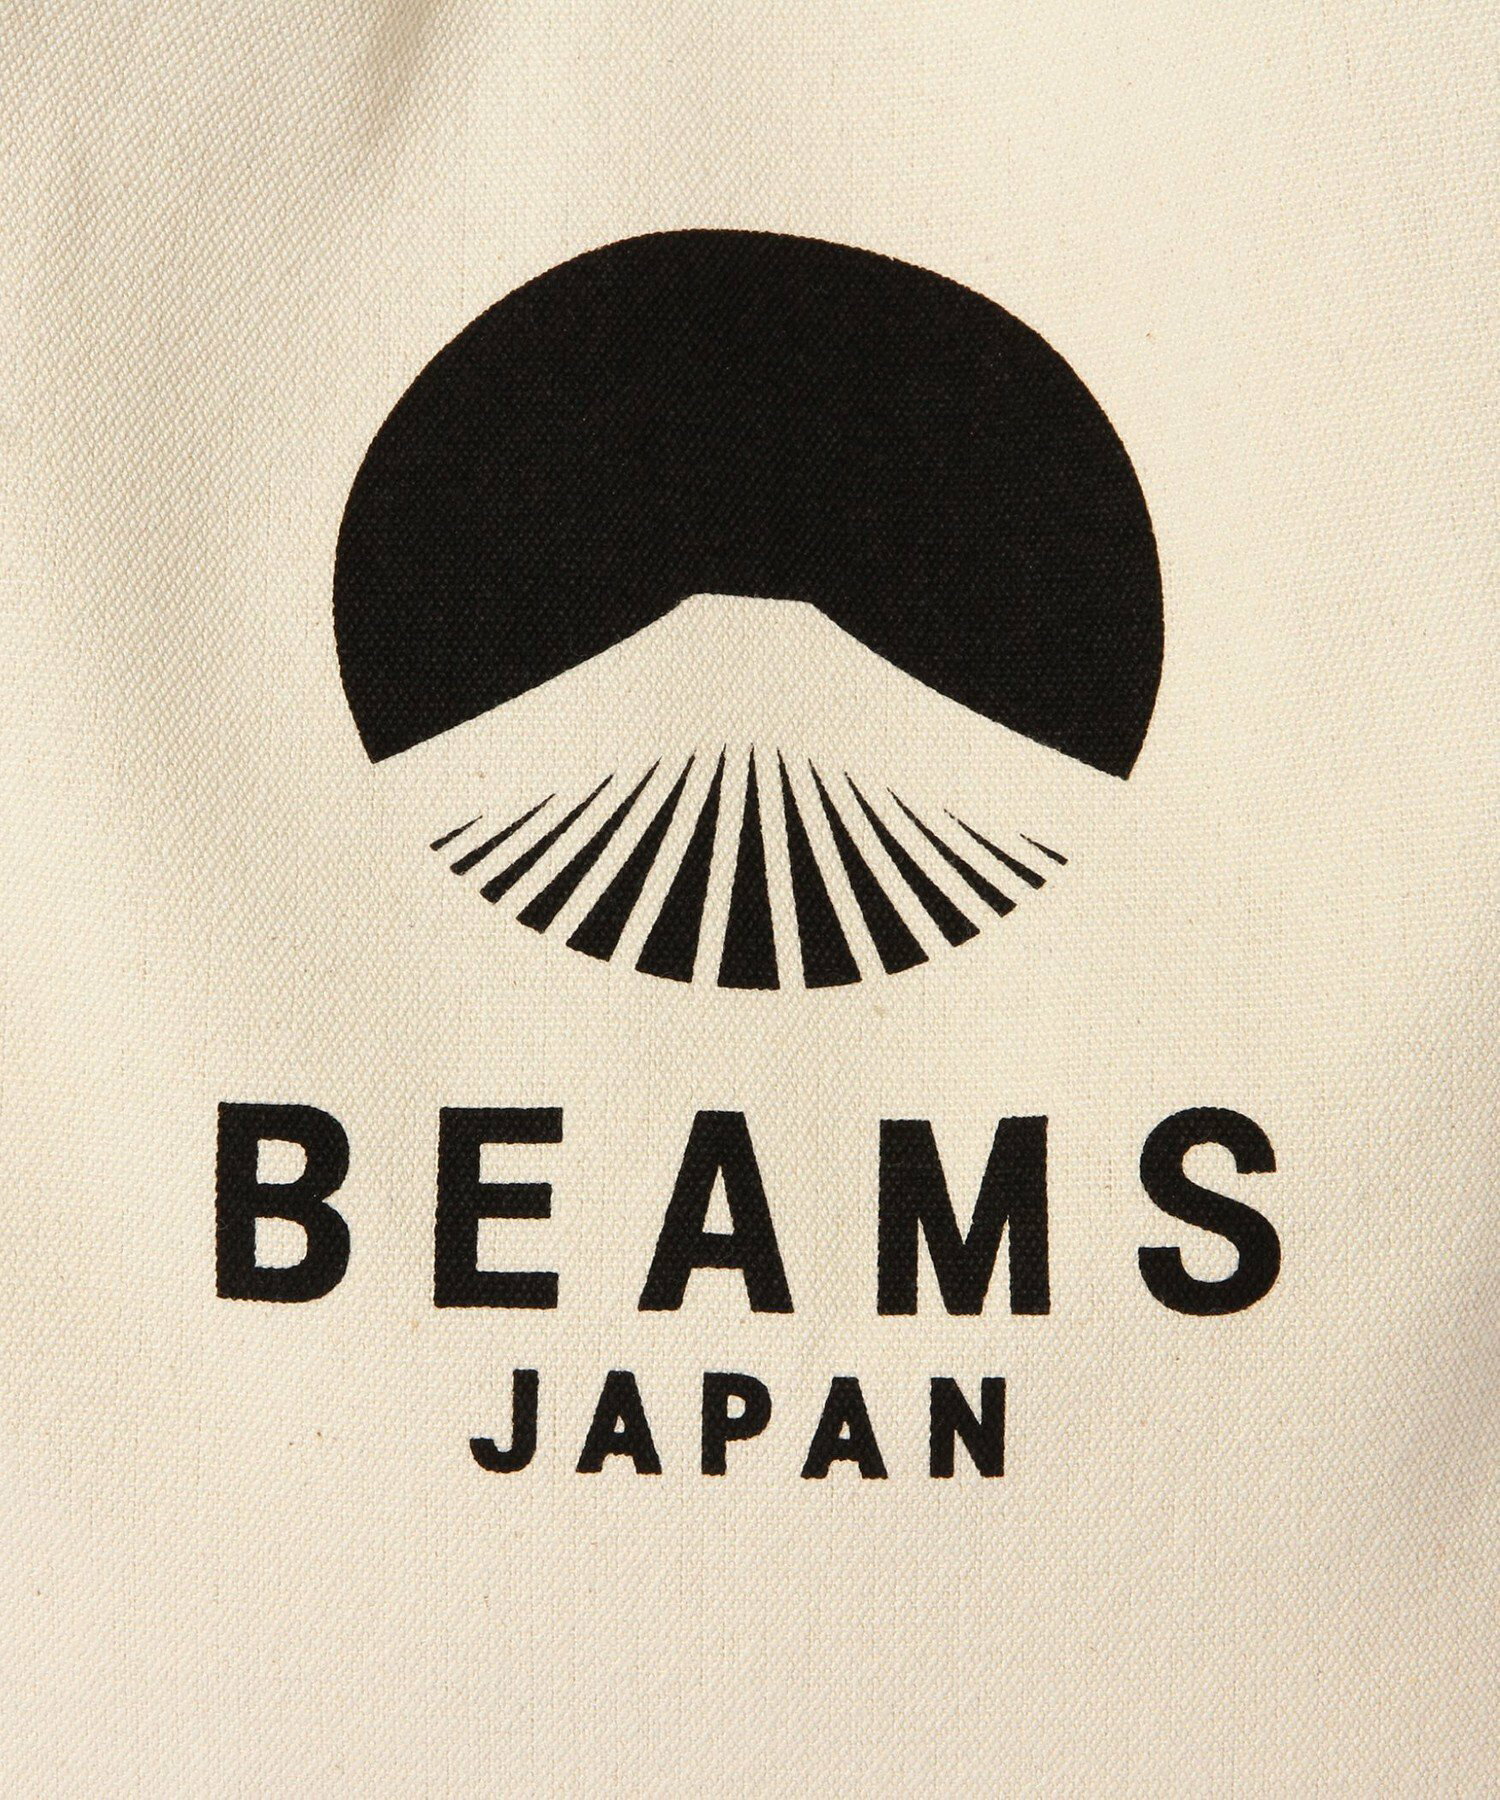 evergreen works *BEAMS JAPAN / 別注 ビームス ジャパン ロゴ トートバッグ